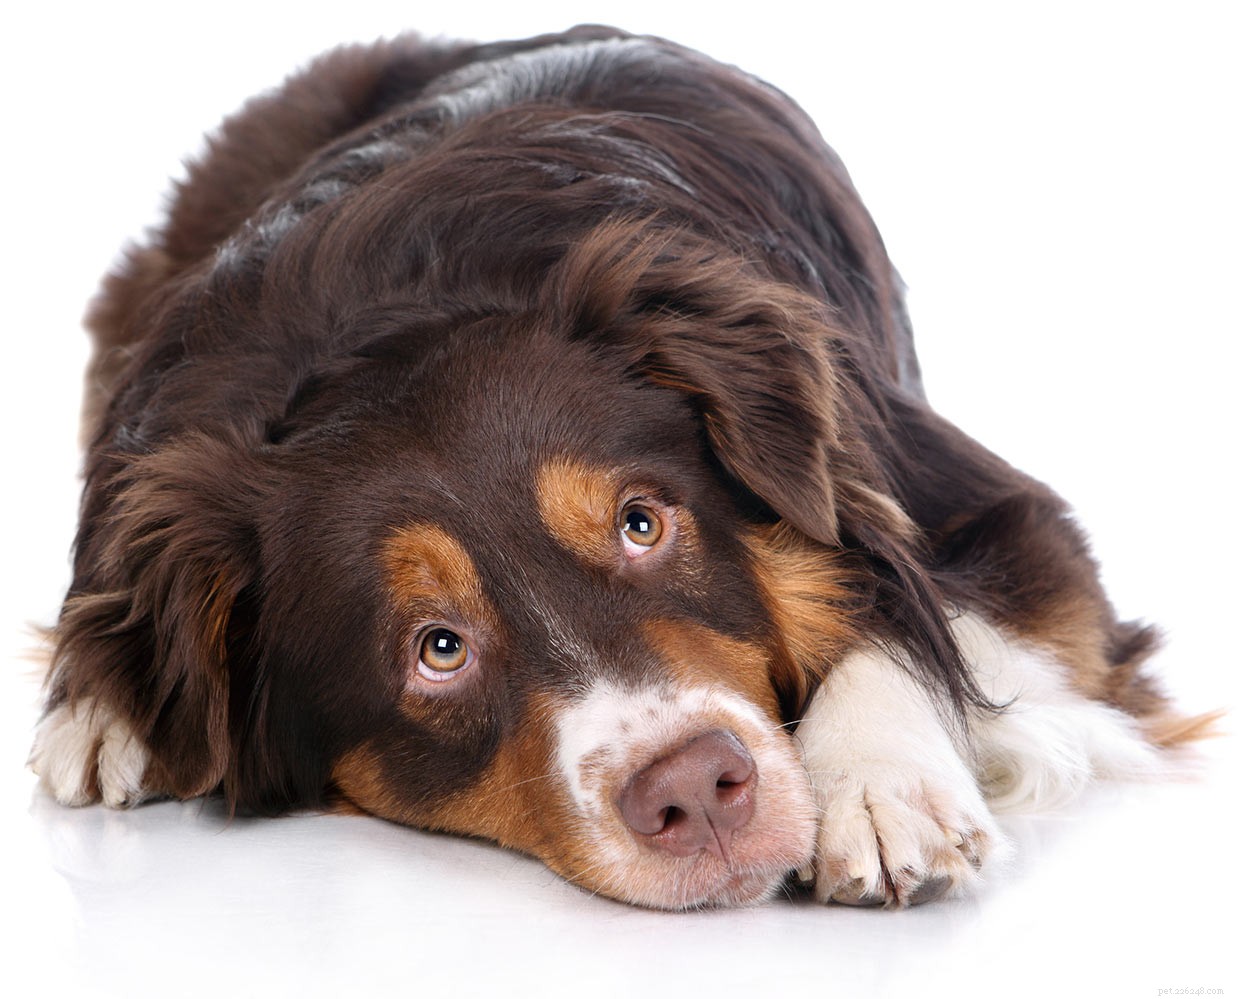 Peróxido de hidrogênio para cães – Para que posso usá-lo com segurança?